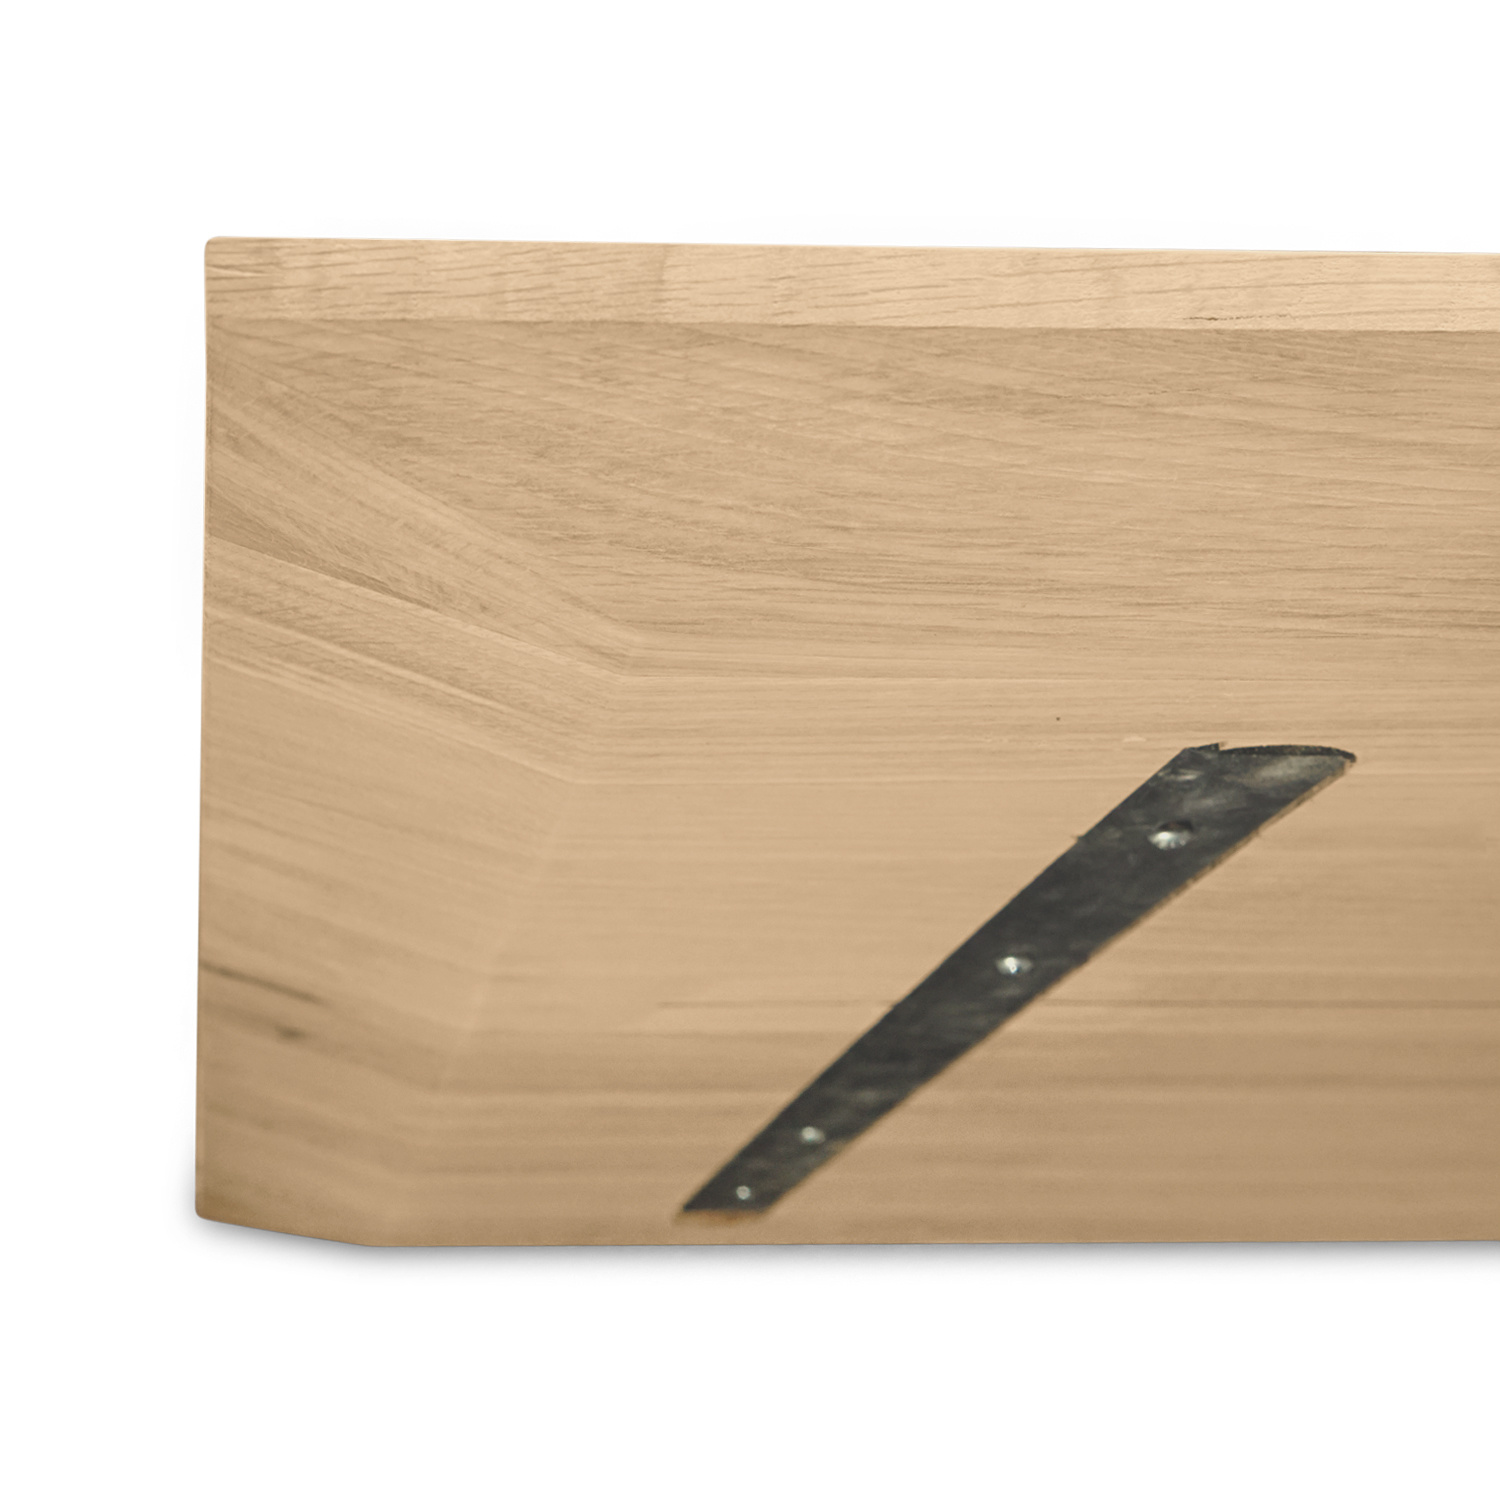  Tischplatte Eiche - Schweizer Kante - nach Maß - 4 cm dick - Eichenholz A-Qualität - Eiche Tischplatte massiv - verleimt & künstlich getrocknet (HF 8-12%) - 50-120x50-350 cm